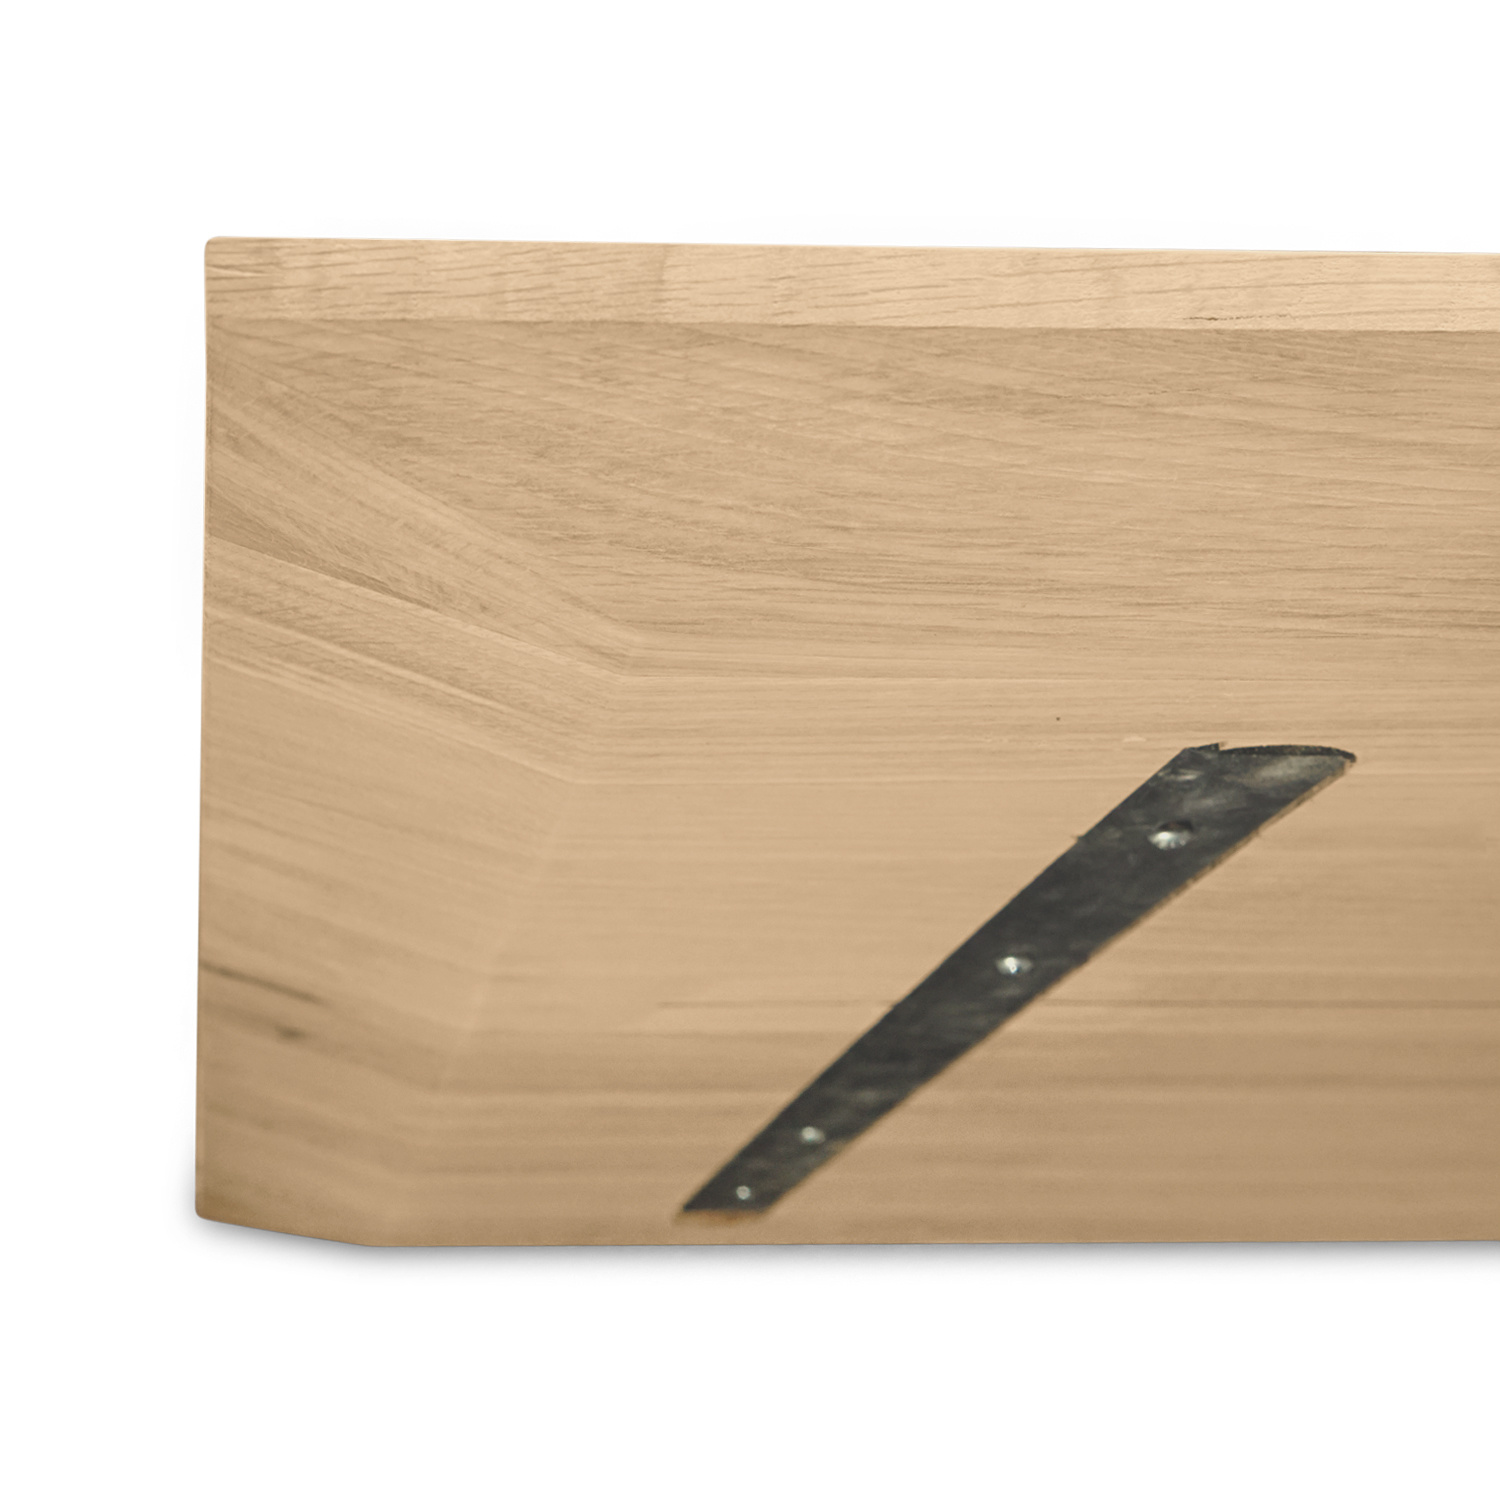  Tischplatte Eiche - Schweizer Kante - nach Maß - 4 cm dick - Eichenholz A-Qualität - Eiche Tischplatte massiv - verleimt & künstlich getrocknet (HF 8-12%) - 50-120x50-350 cm